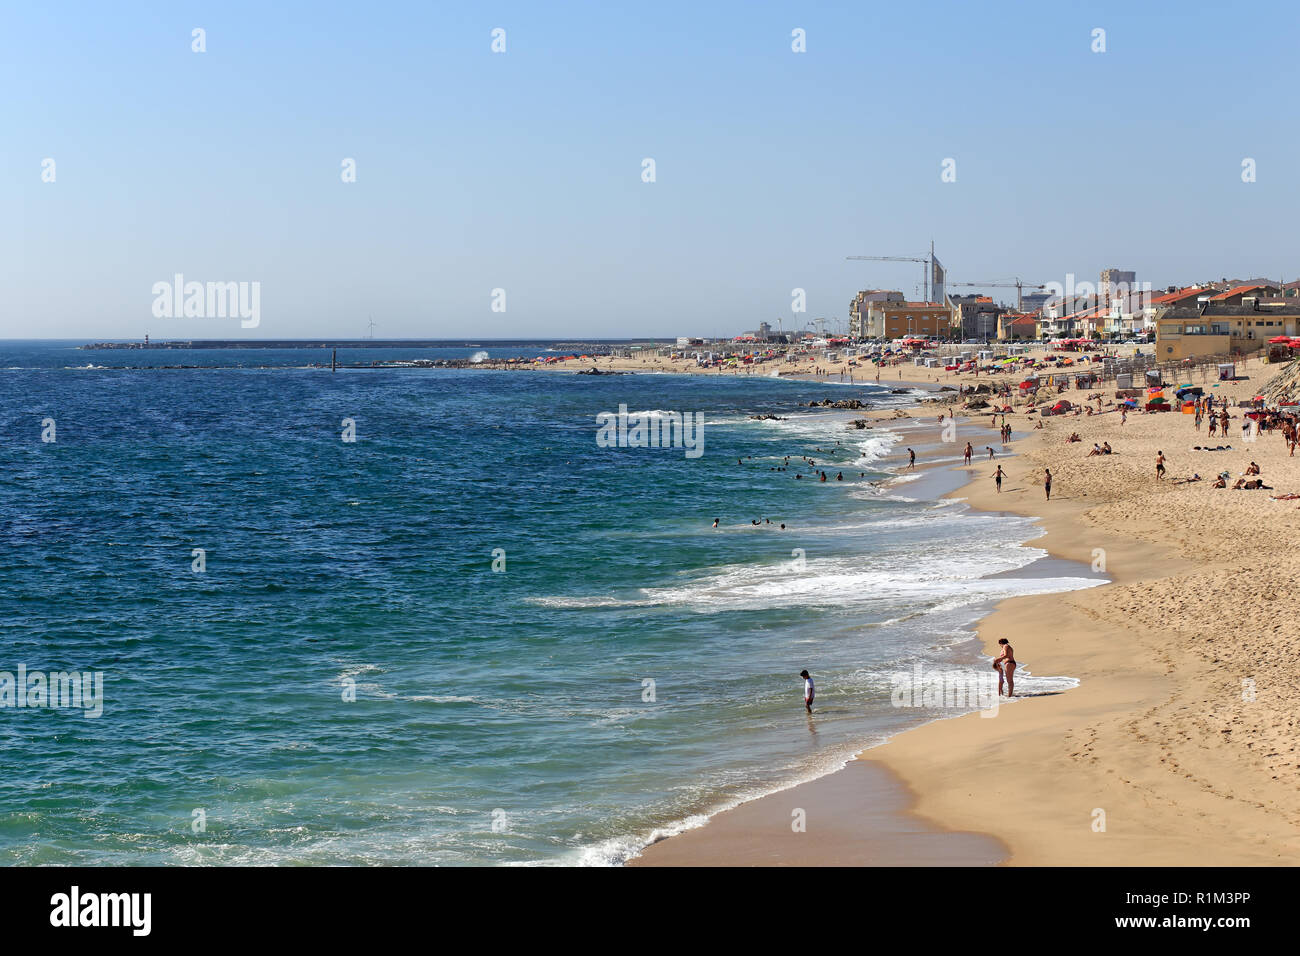 Vila do Conde, Portugal - 19 juin 2015 : belle plage au début de l'été dans le nord du Portugal Banque D'Images